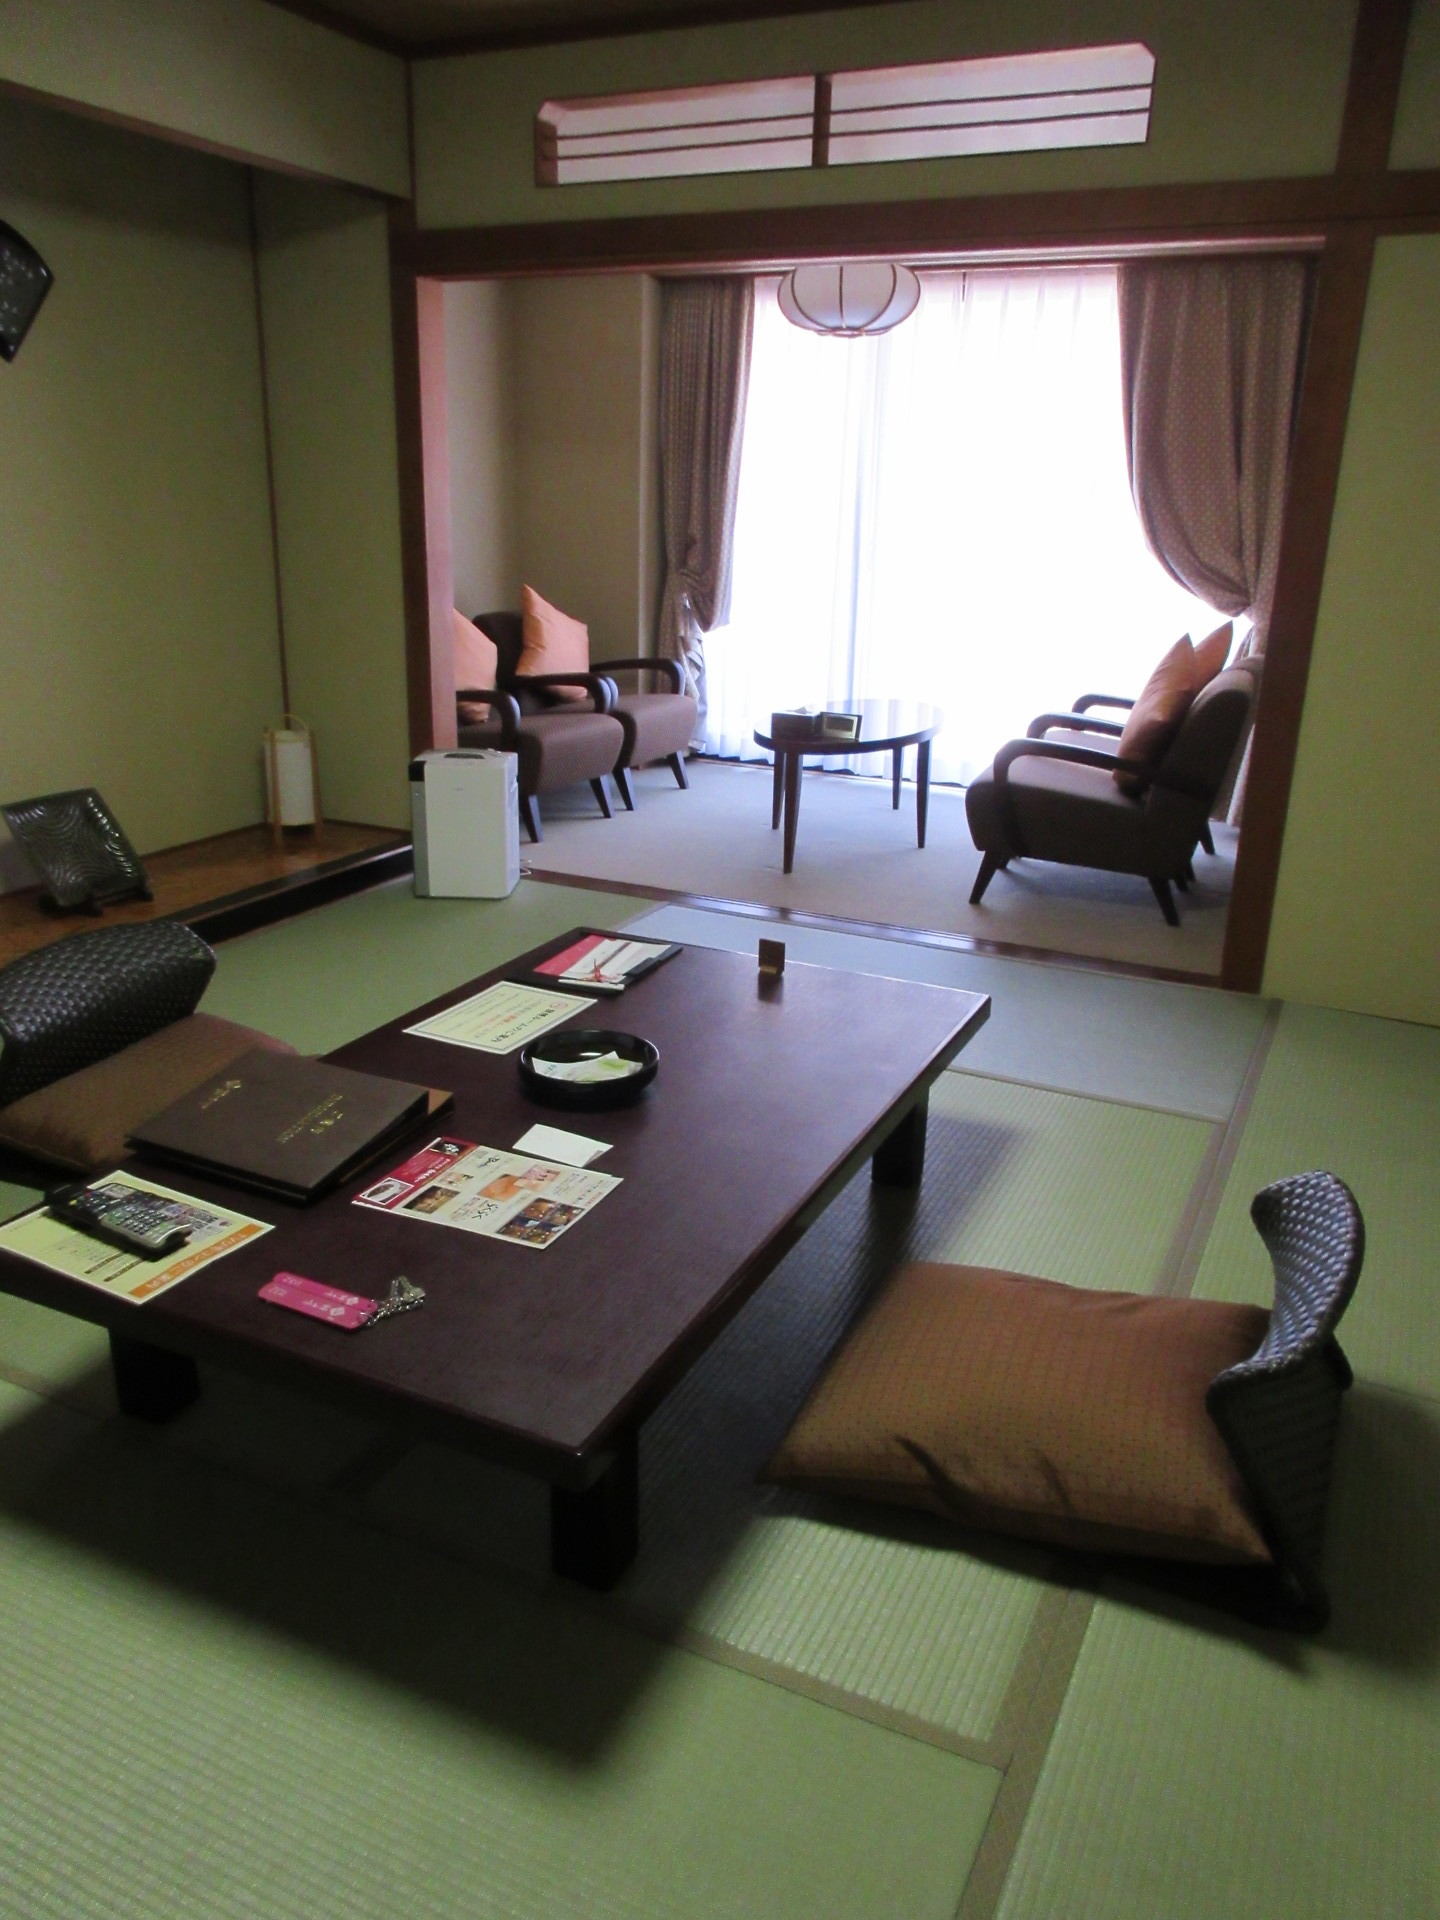 鬼怒川温泉あさやホテルに泊まってきた 部屋編 長島計画